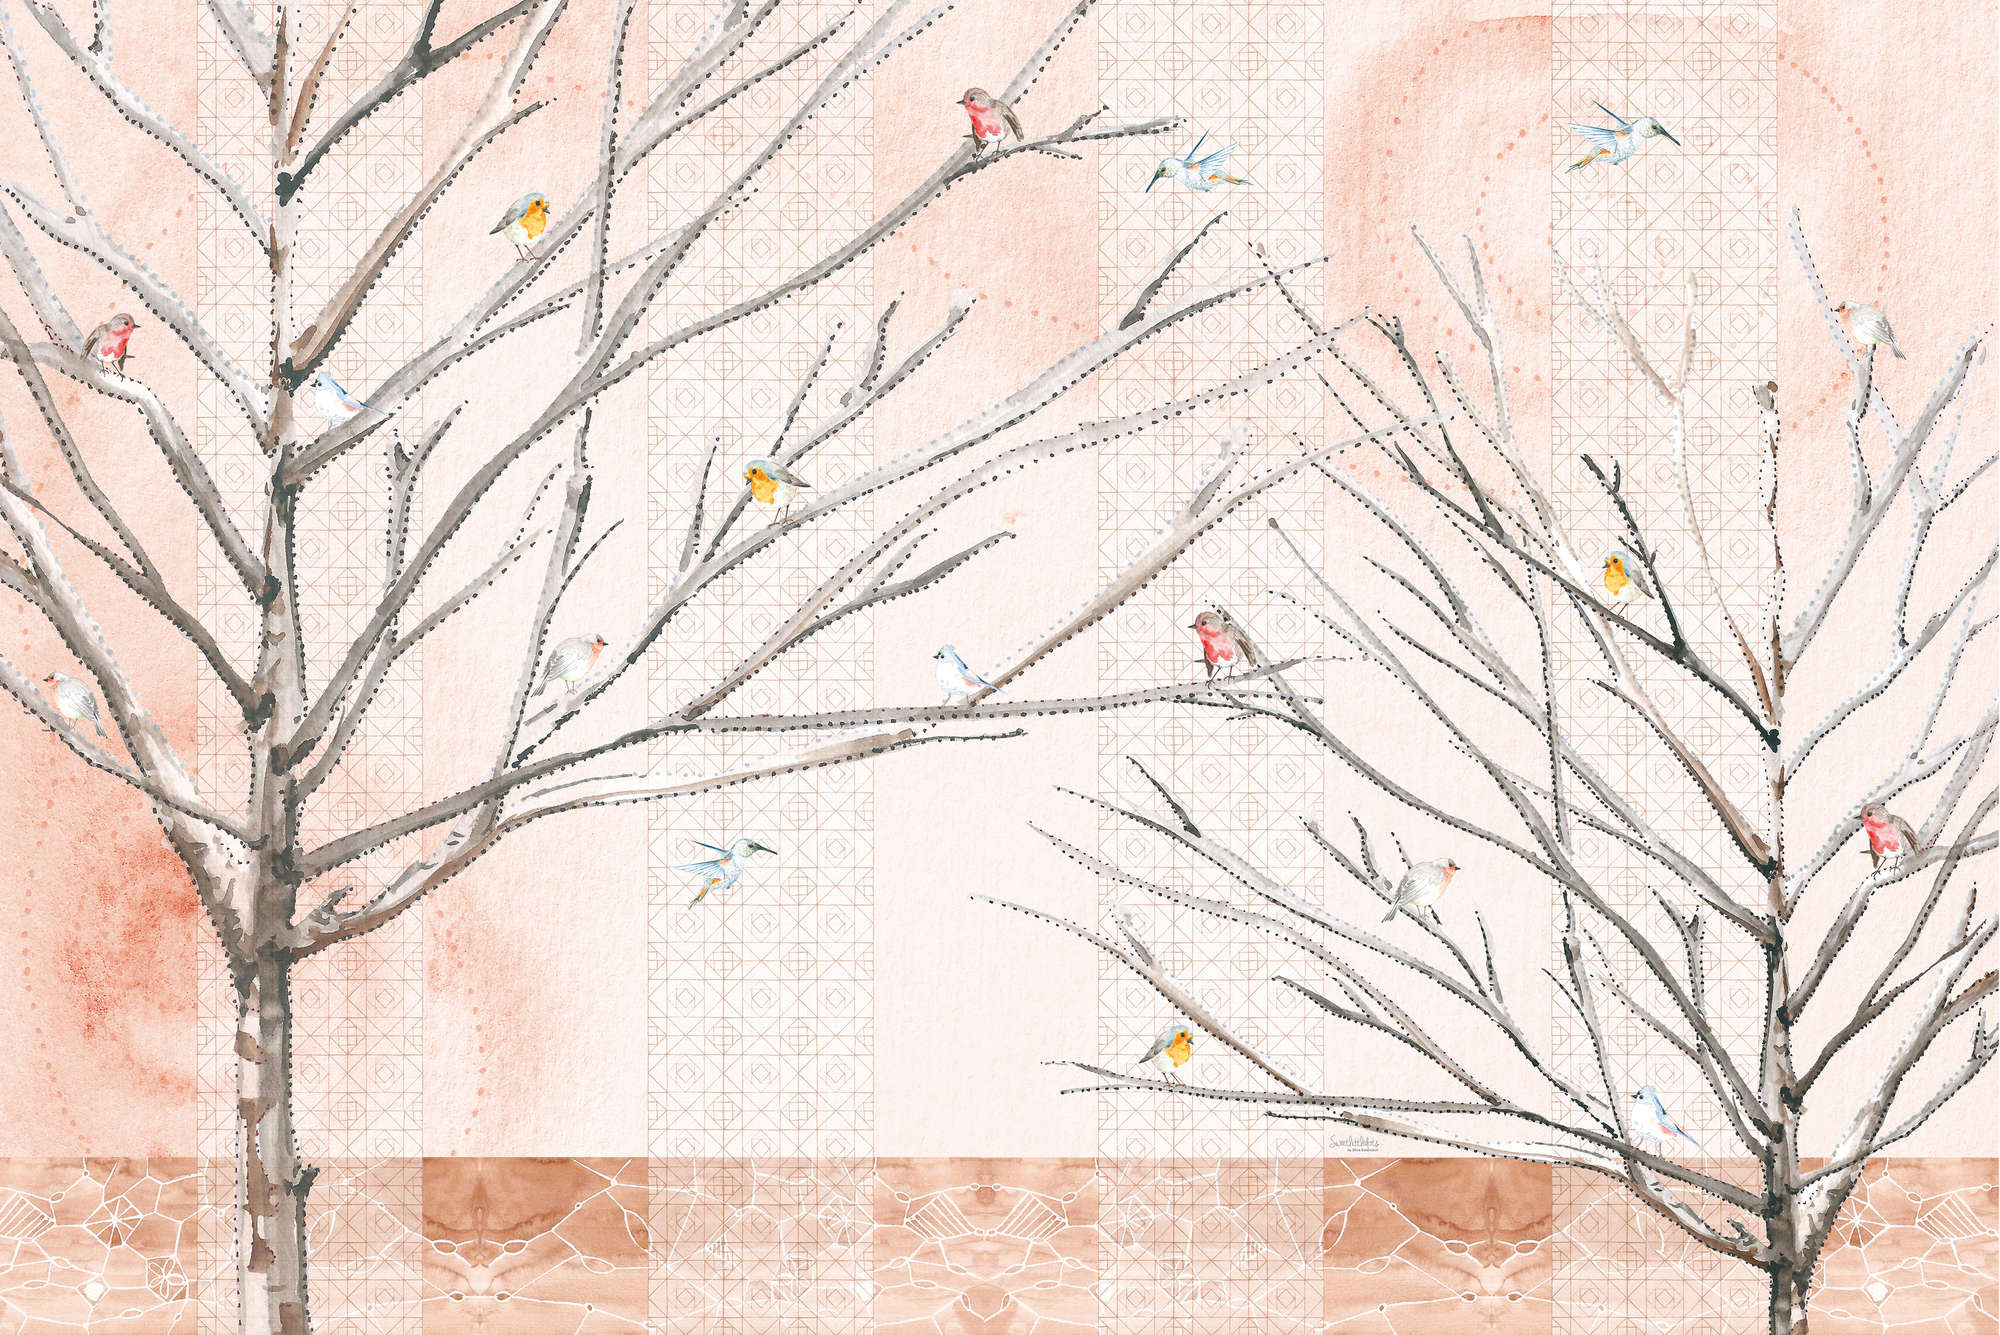             Artistiek behang bomen met vogels in beige en bruin op eersteklas gladde fleece
        